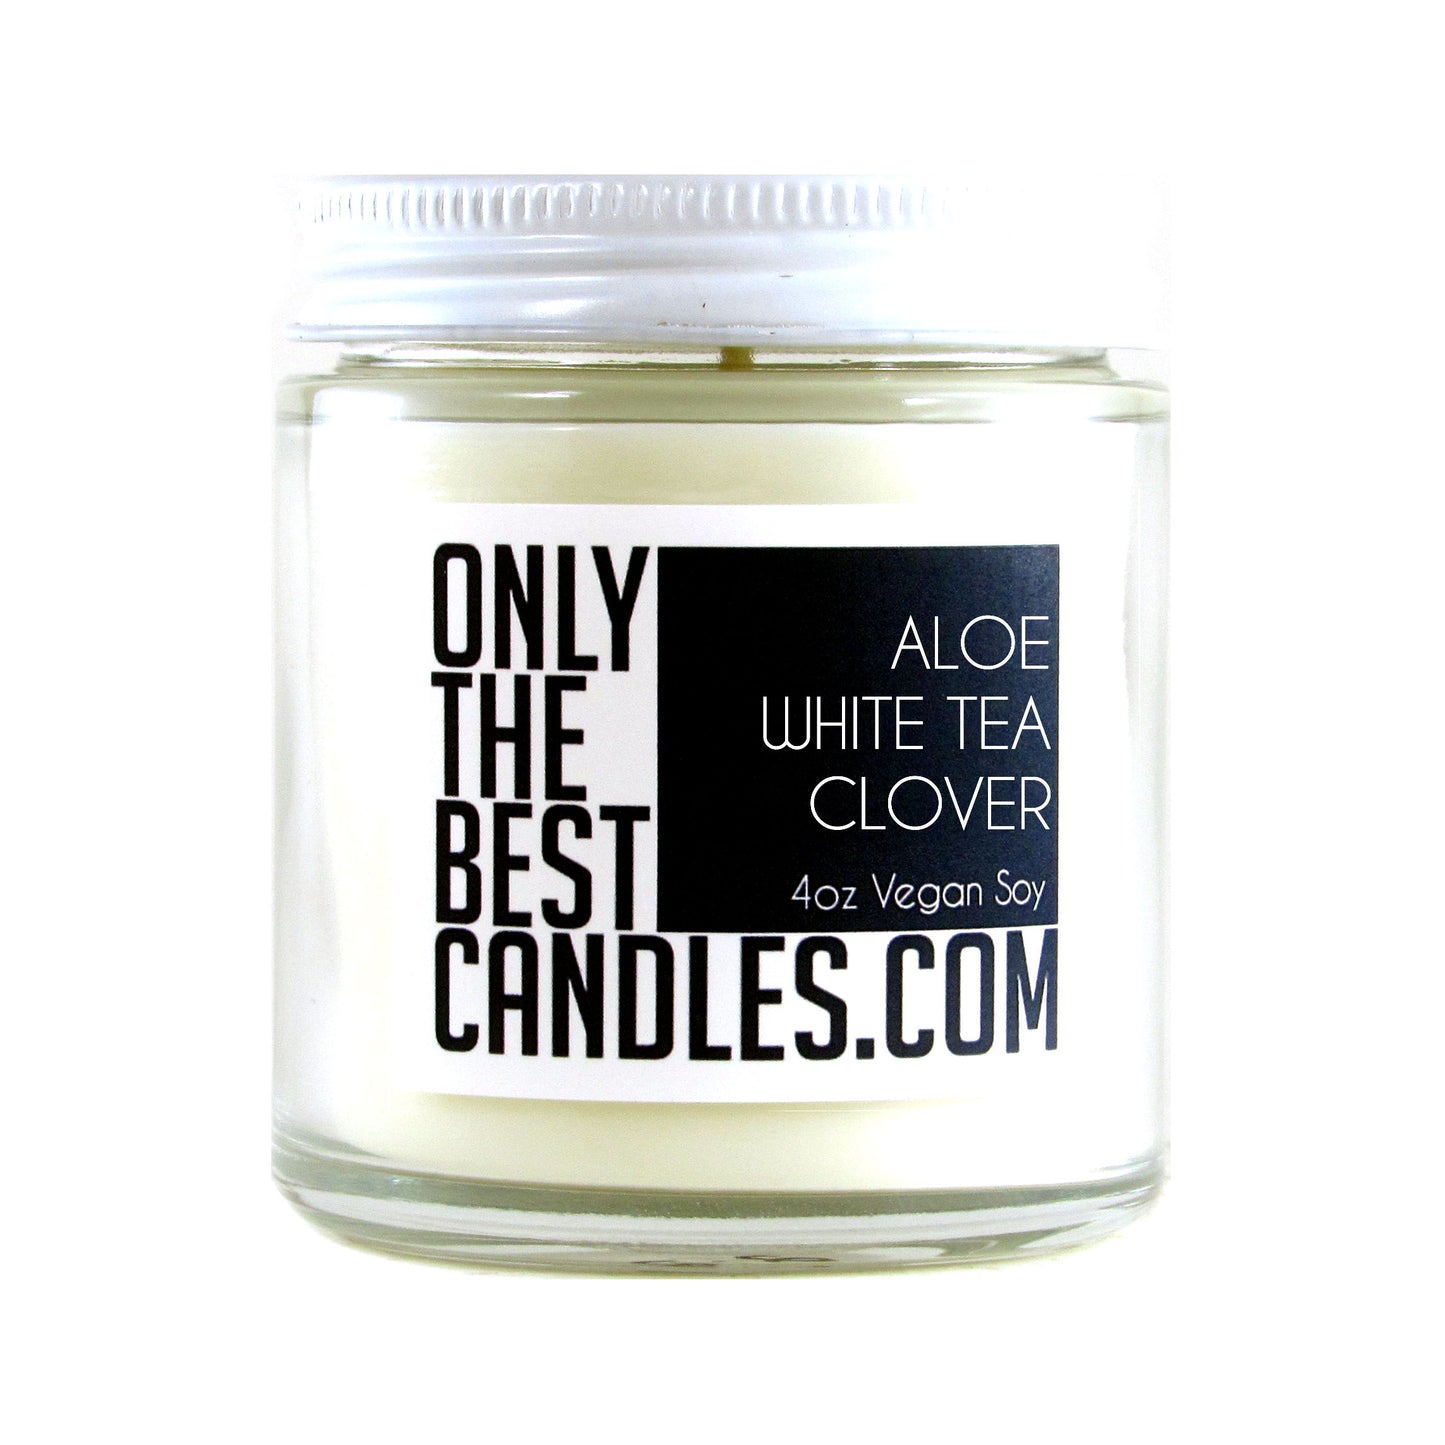 Aloe White Tea Clover 4oz Candle